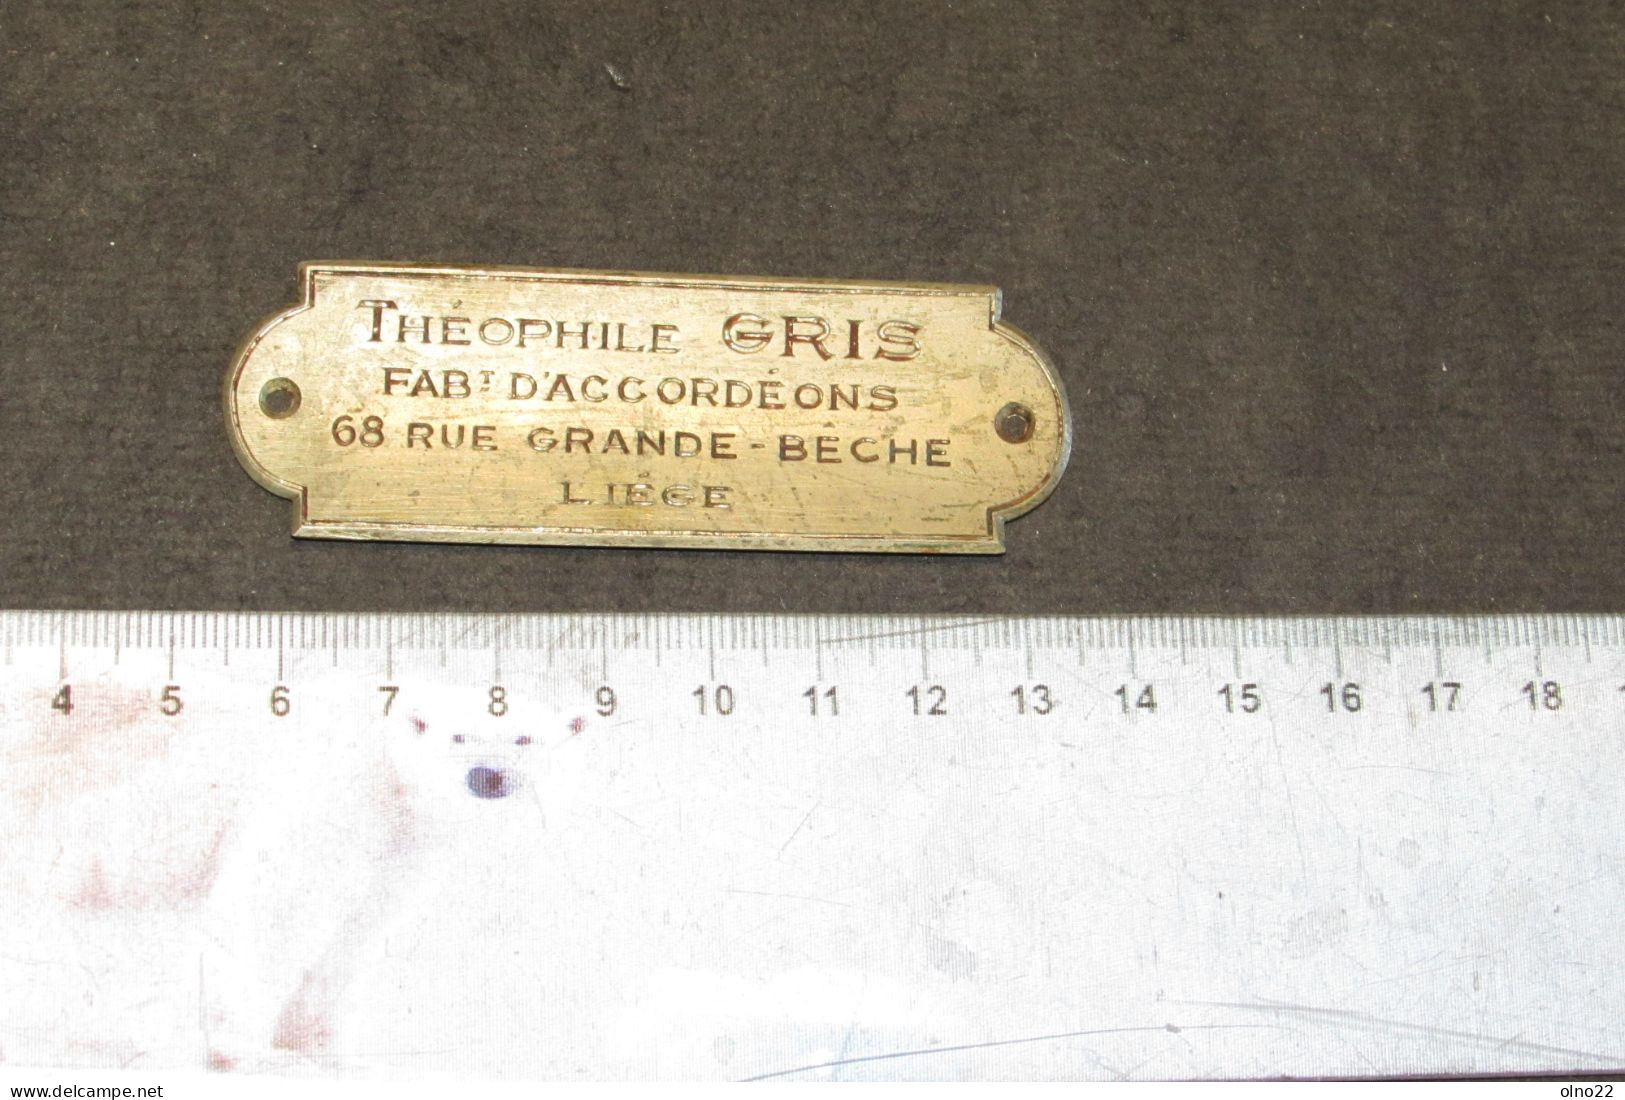 THEOPHILE GRIS - FABt. D'ACCORDEONS 68 RUE GRANDE BECHE LIEGE - PLAQUETTE PUBLICITAIRE DE FABRICANT  - VOIR SCANS - Musical Instruments